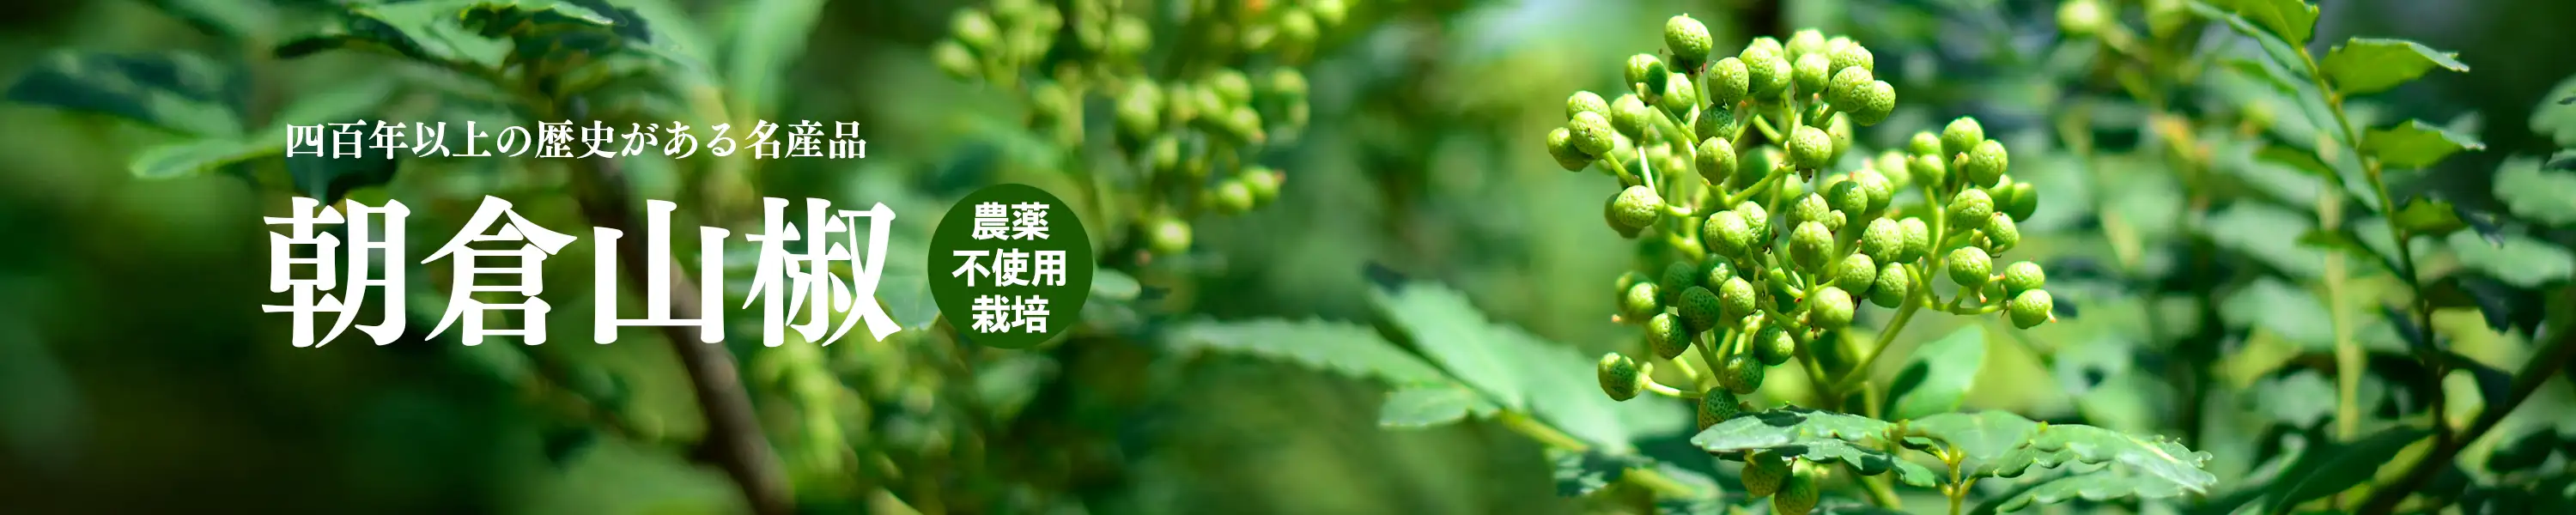 400年以上の歴史がある名産品「朝倉山椒」農薬不使用栽培